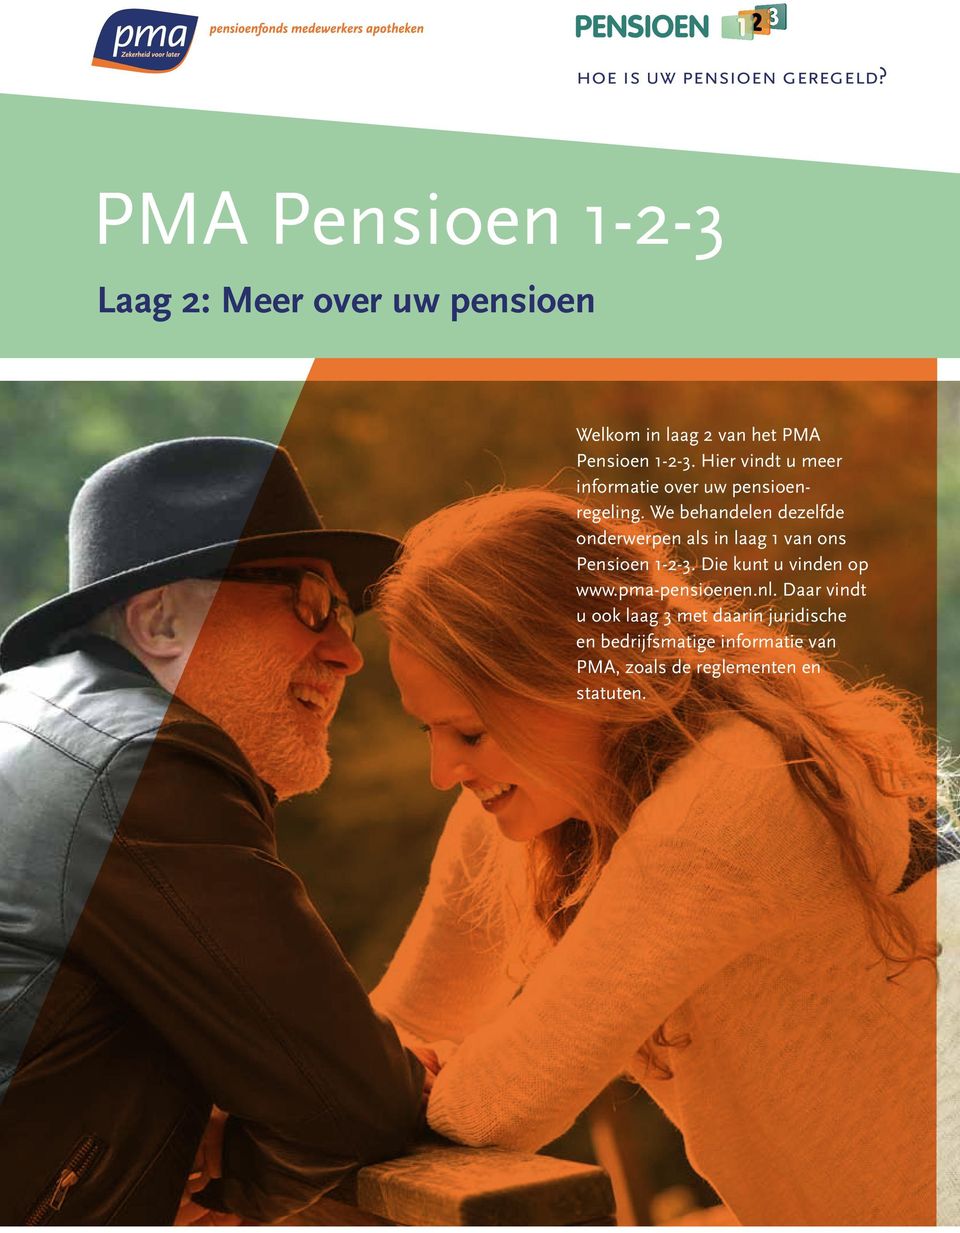 Hier vindt u meer informatie over uw pensioenregeling.